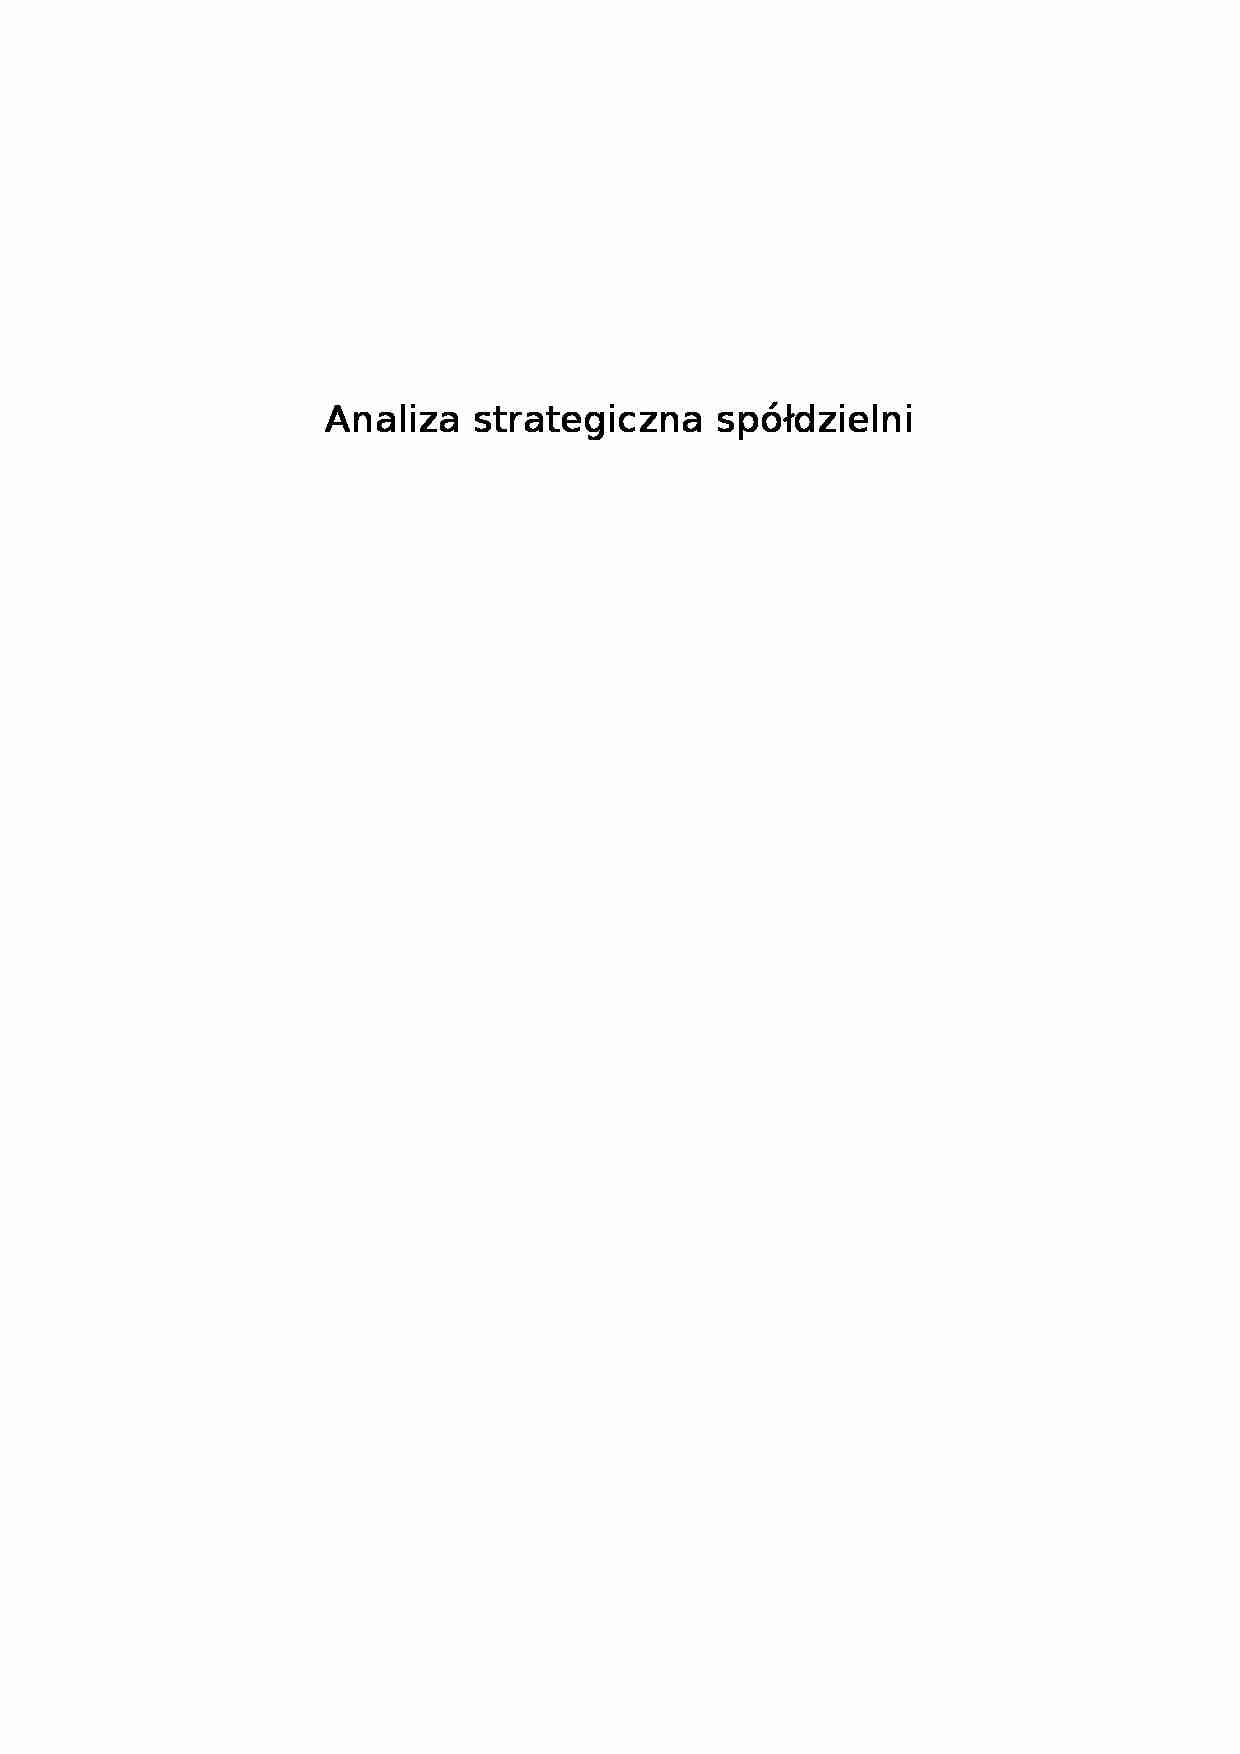 Analiza stategiczna spółdzielni - Analiza strategiczna - strona 1